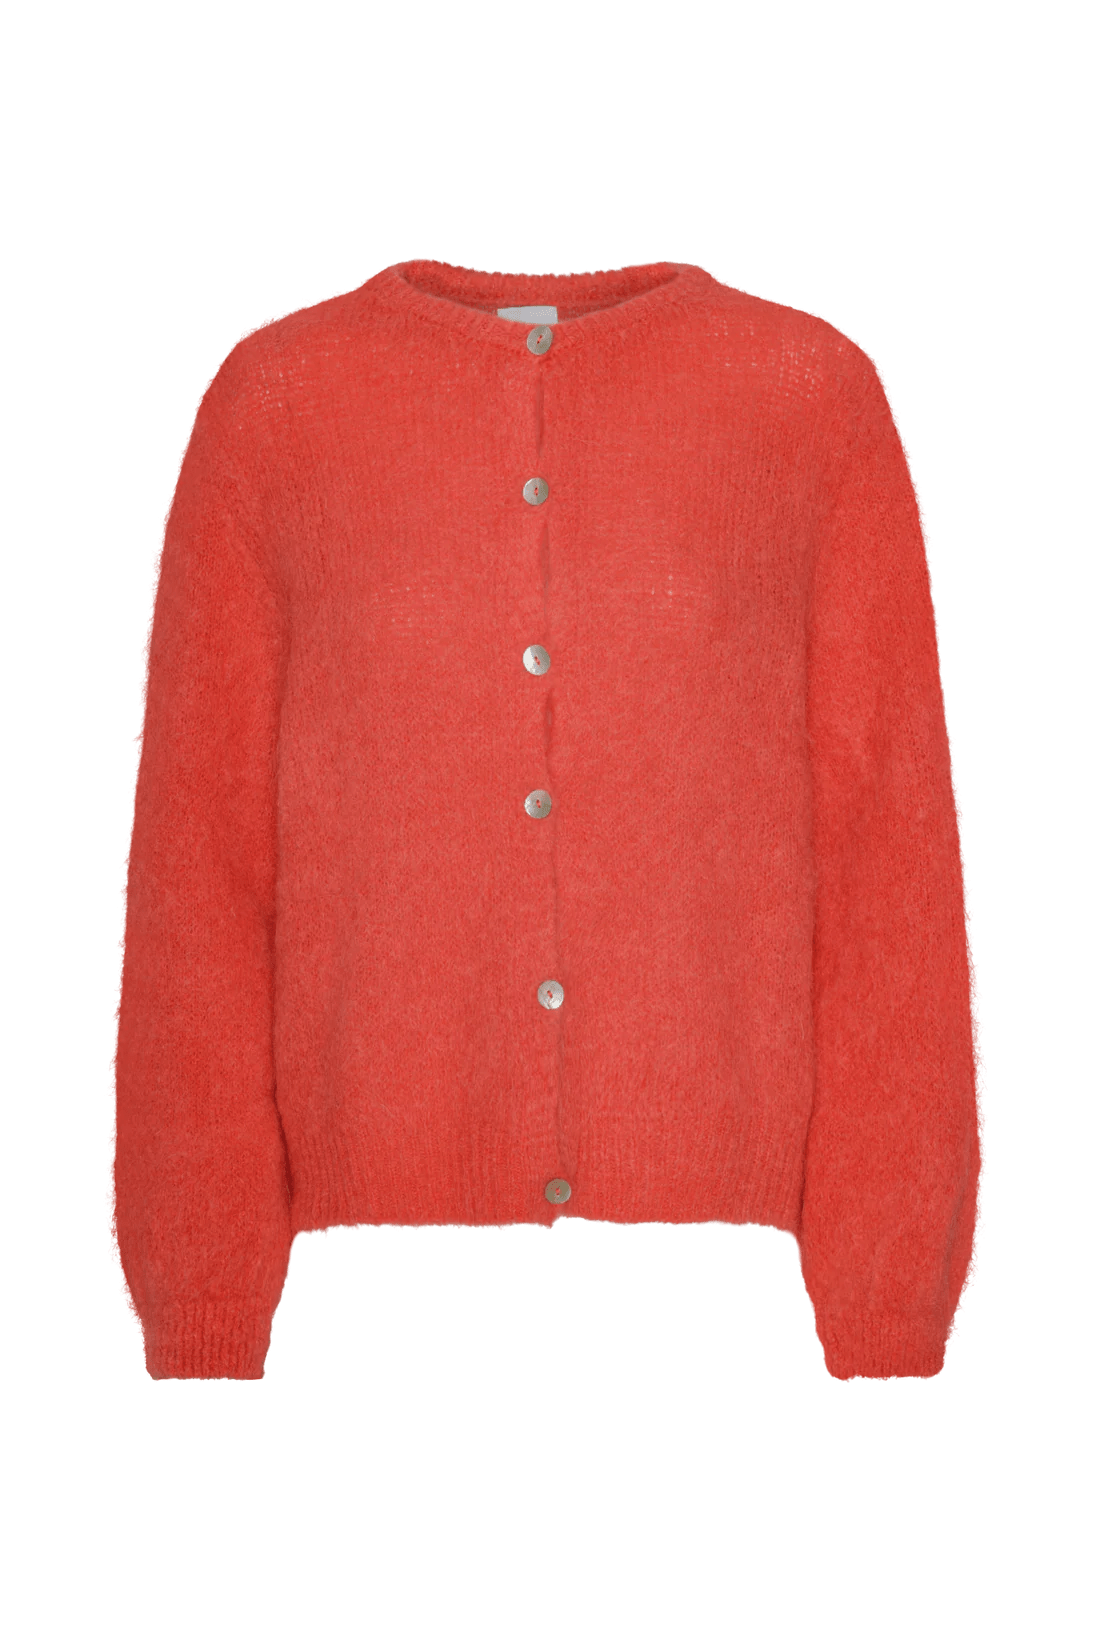 AmericanDreams Knitwear Susan Alpaca Cardigan in Coral Red